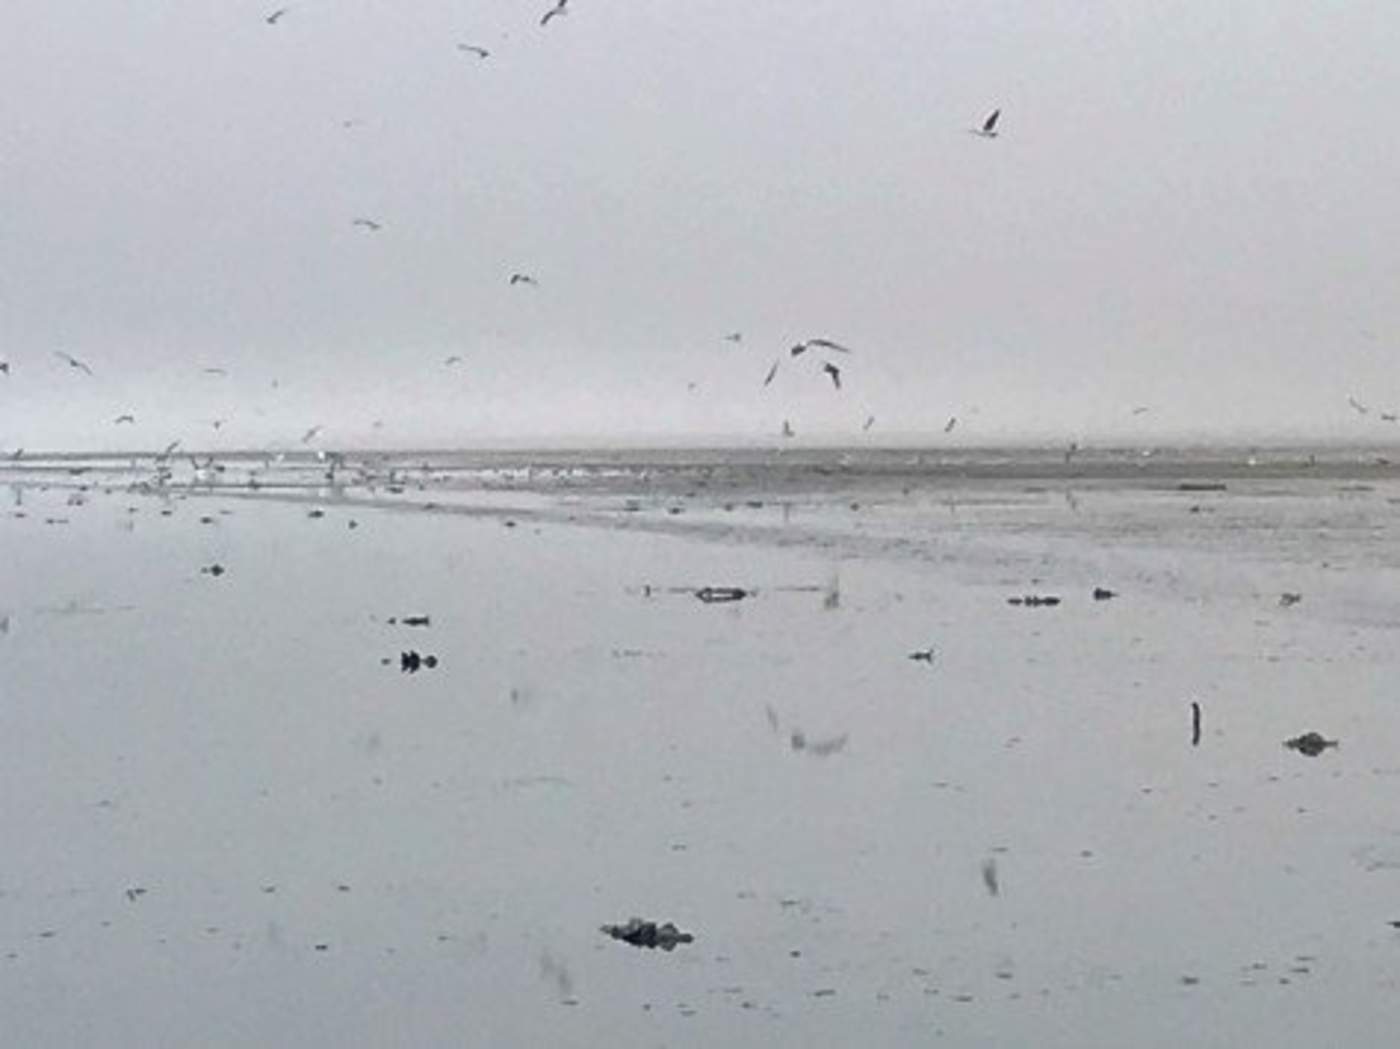 El Departamento de Pesca y Caza de California señaló que patos, gaviotas y otras aves fueron encontrados muertos en el extremo sur del lago más grande del estado entre el 8 de enero y el jueves pasado. (ARCHIVO)